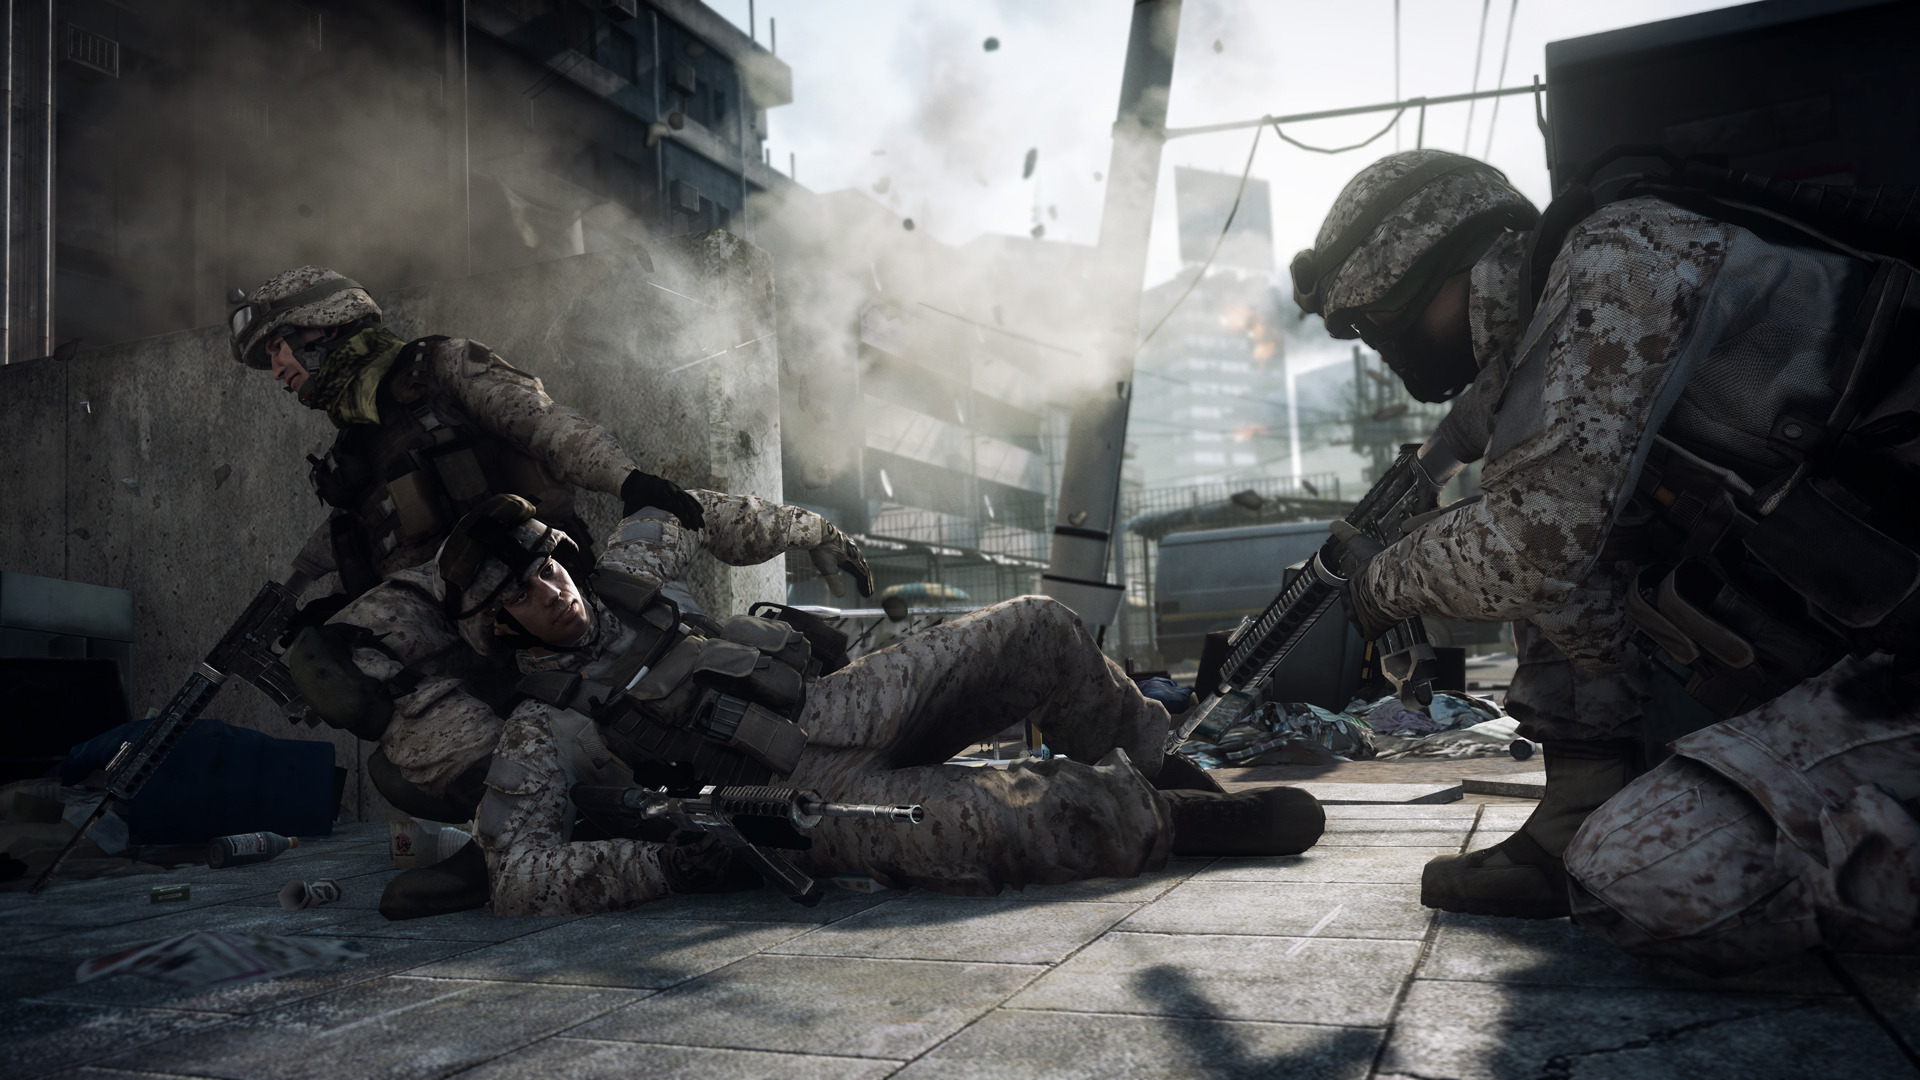 3d обои Американские солдаты в игре Battlefield 3 (Бэтлфилд 3) тащат раненного  игры # 41693